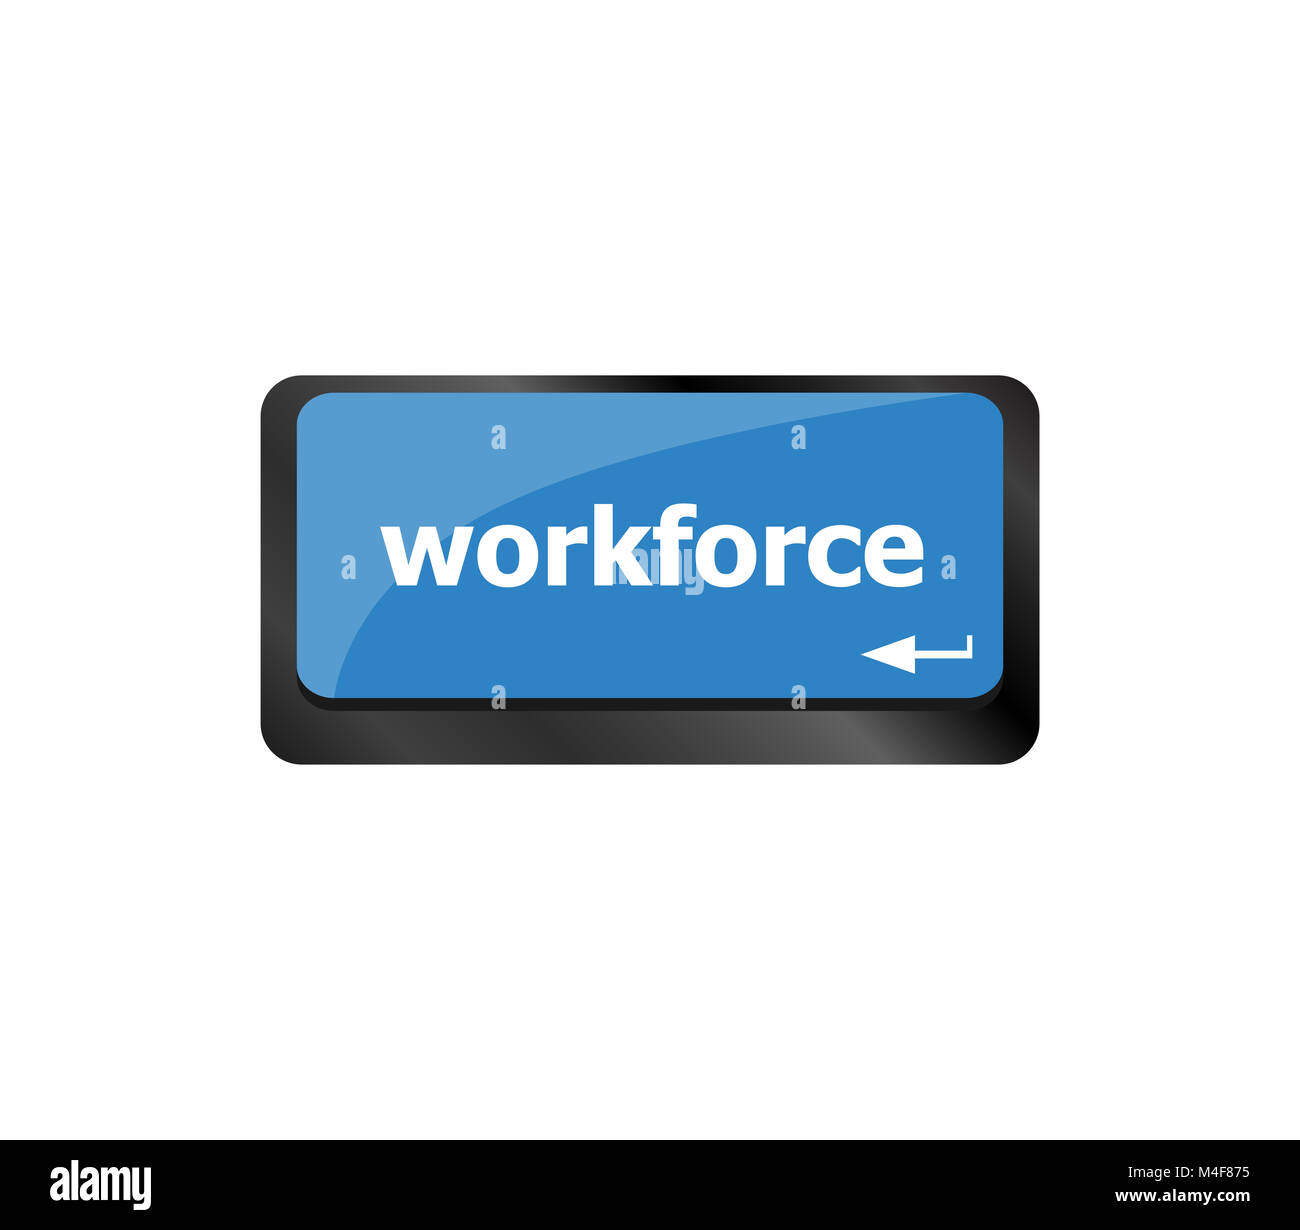 Workforce teclas en el teclado del ordenador - Concepto de negocio Foto de stock